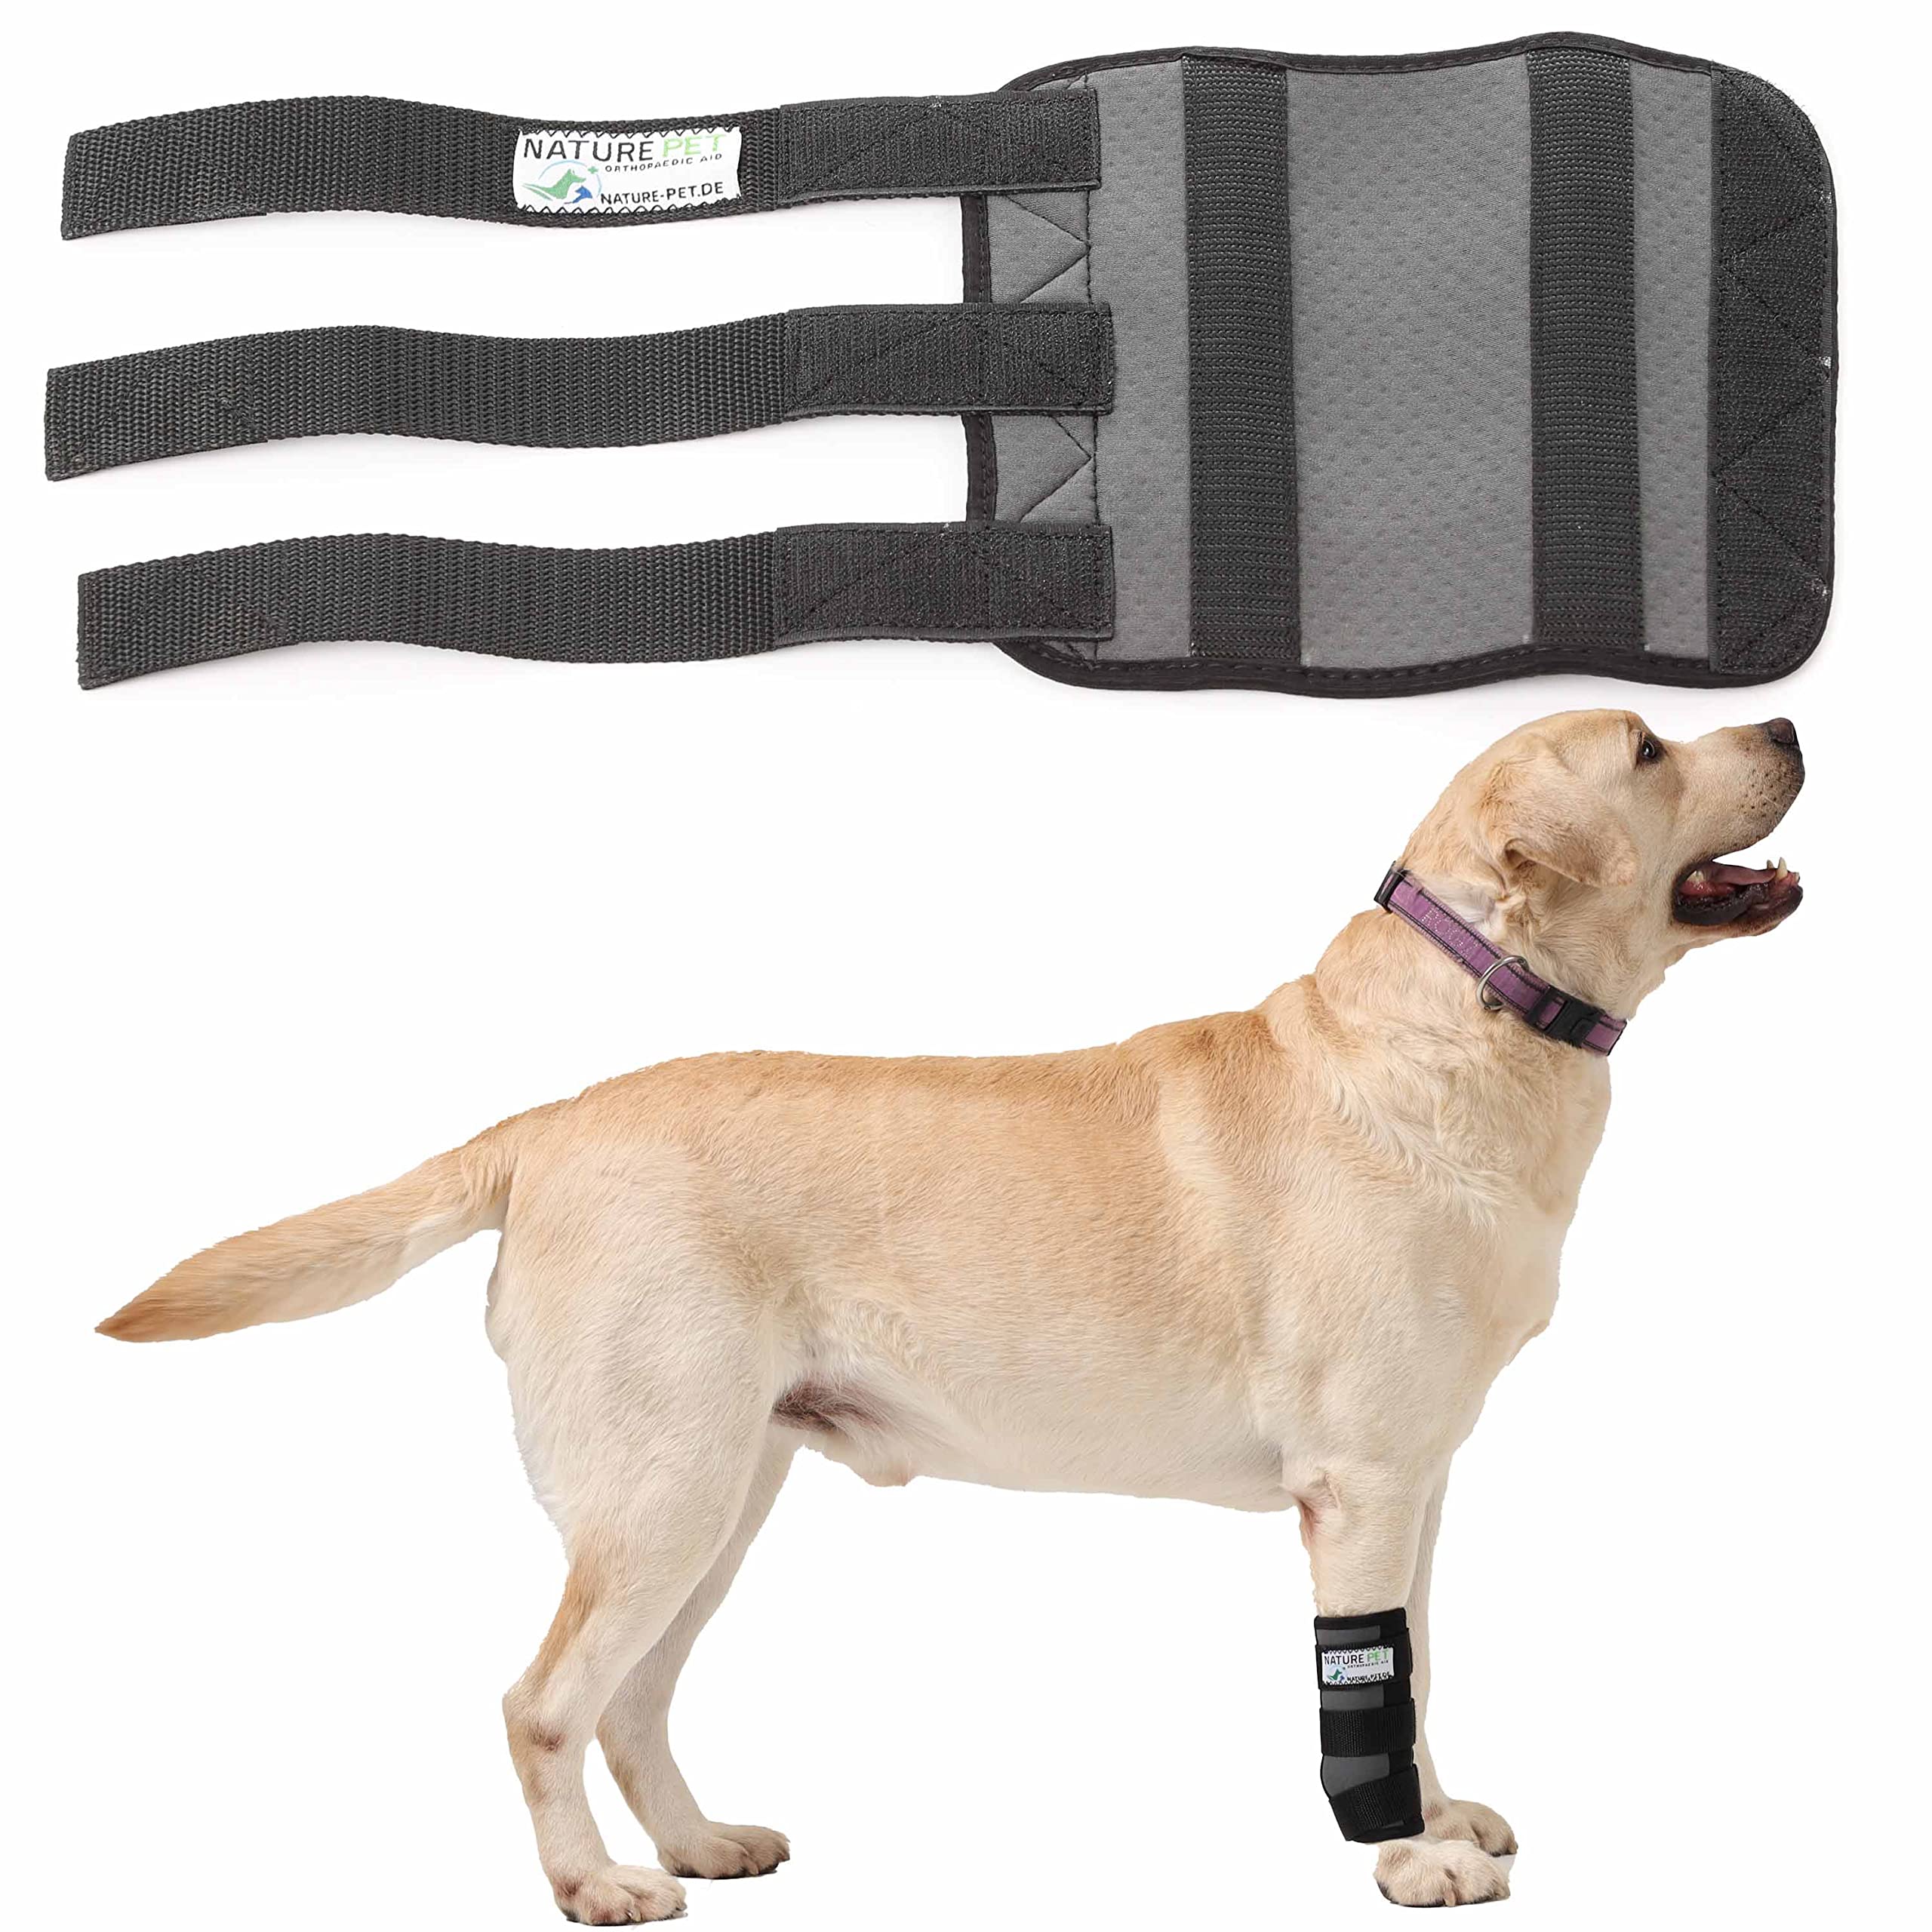 Nature Pet Sport Gelenk Bandage für Hunde Gelenk- & Knochenschutz für Hunde - geeignet für Rettungs- und Diensthunde oder Agility, Flyball und Hunde Frisbee - Bandage Hund Vorderbein bei leichter Arthrose oder Leckschutz und Verbandschutz nach OP (L)